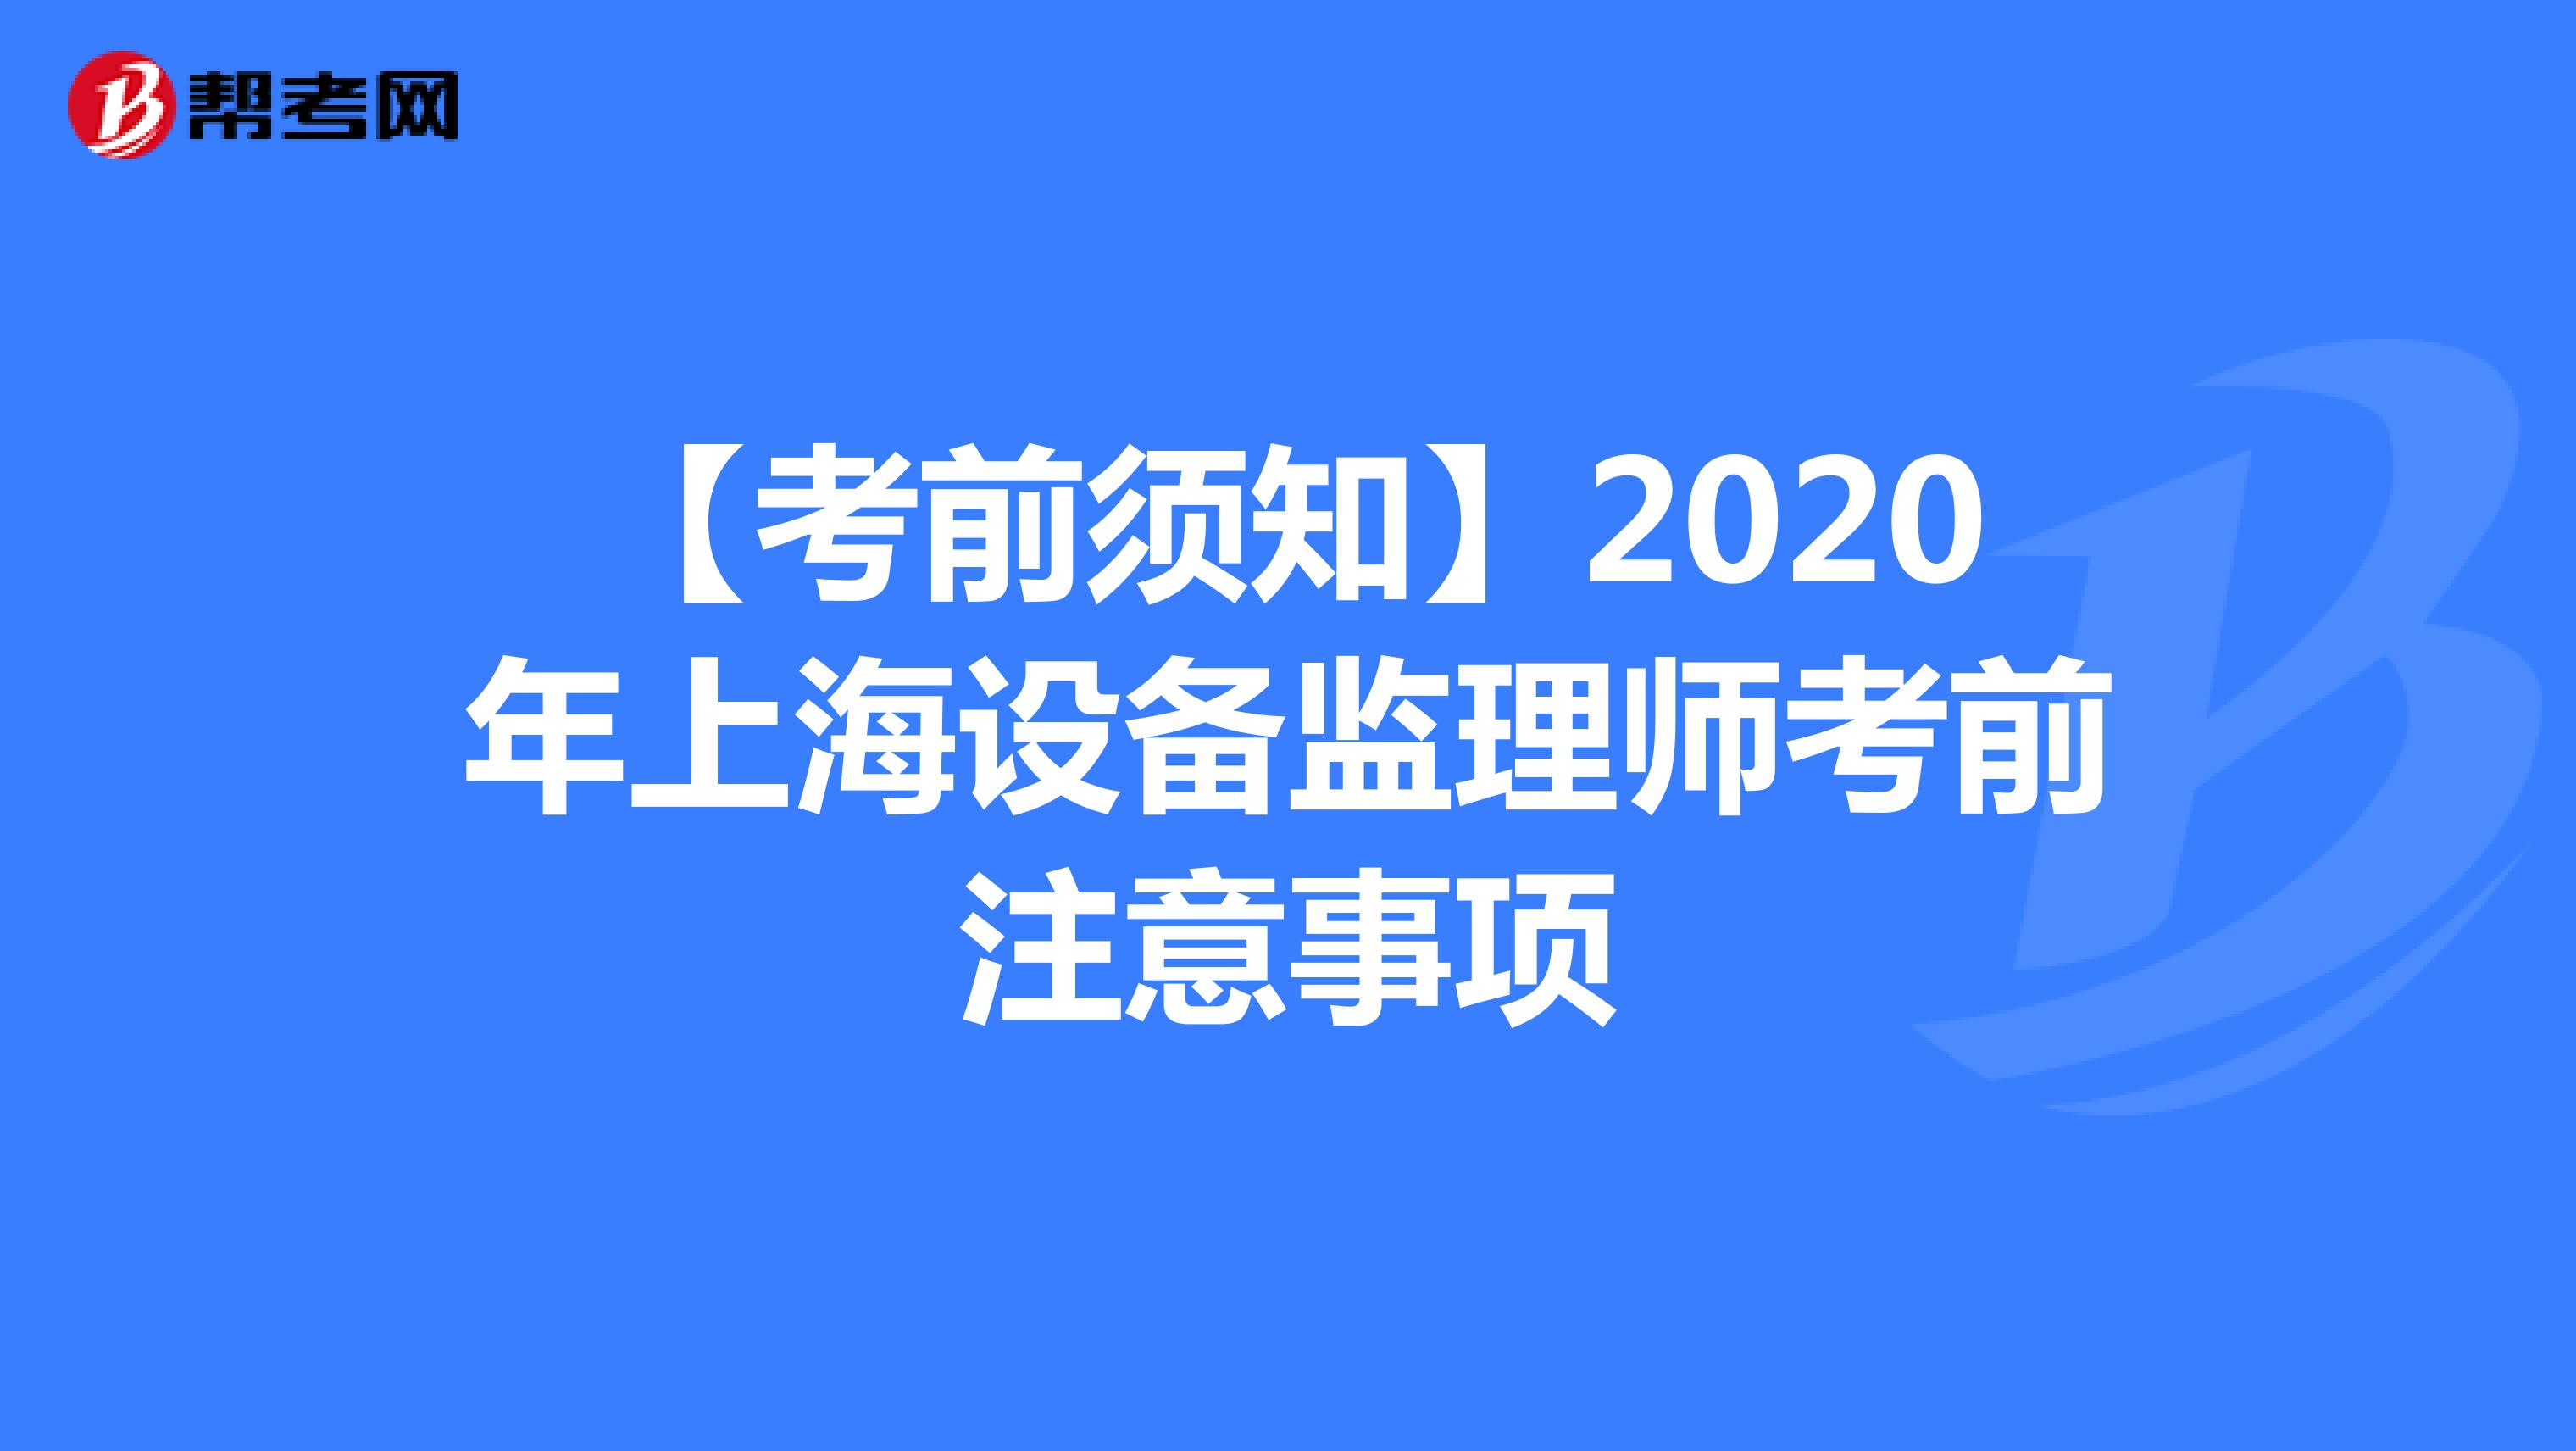 【考前须知】2020年上海设备监理师考前注意事项